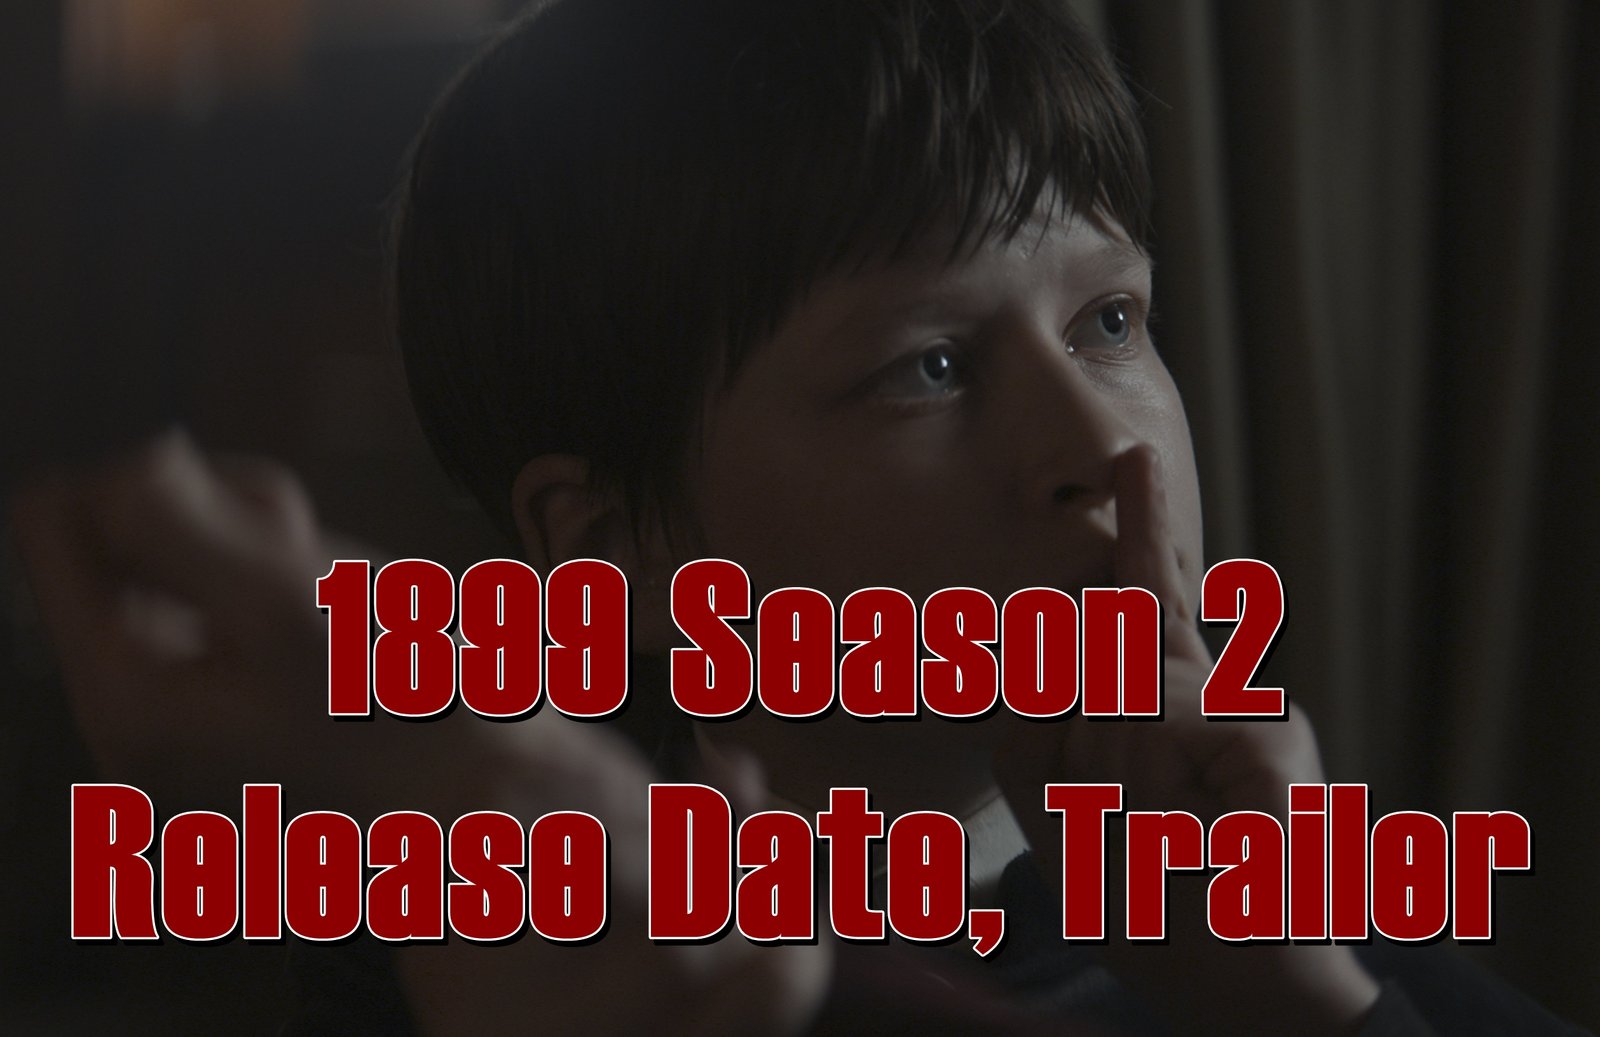 1899 Season 2 Release Date, Trailer